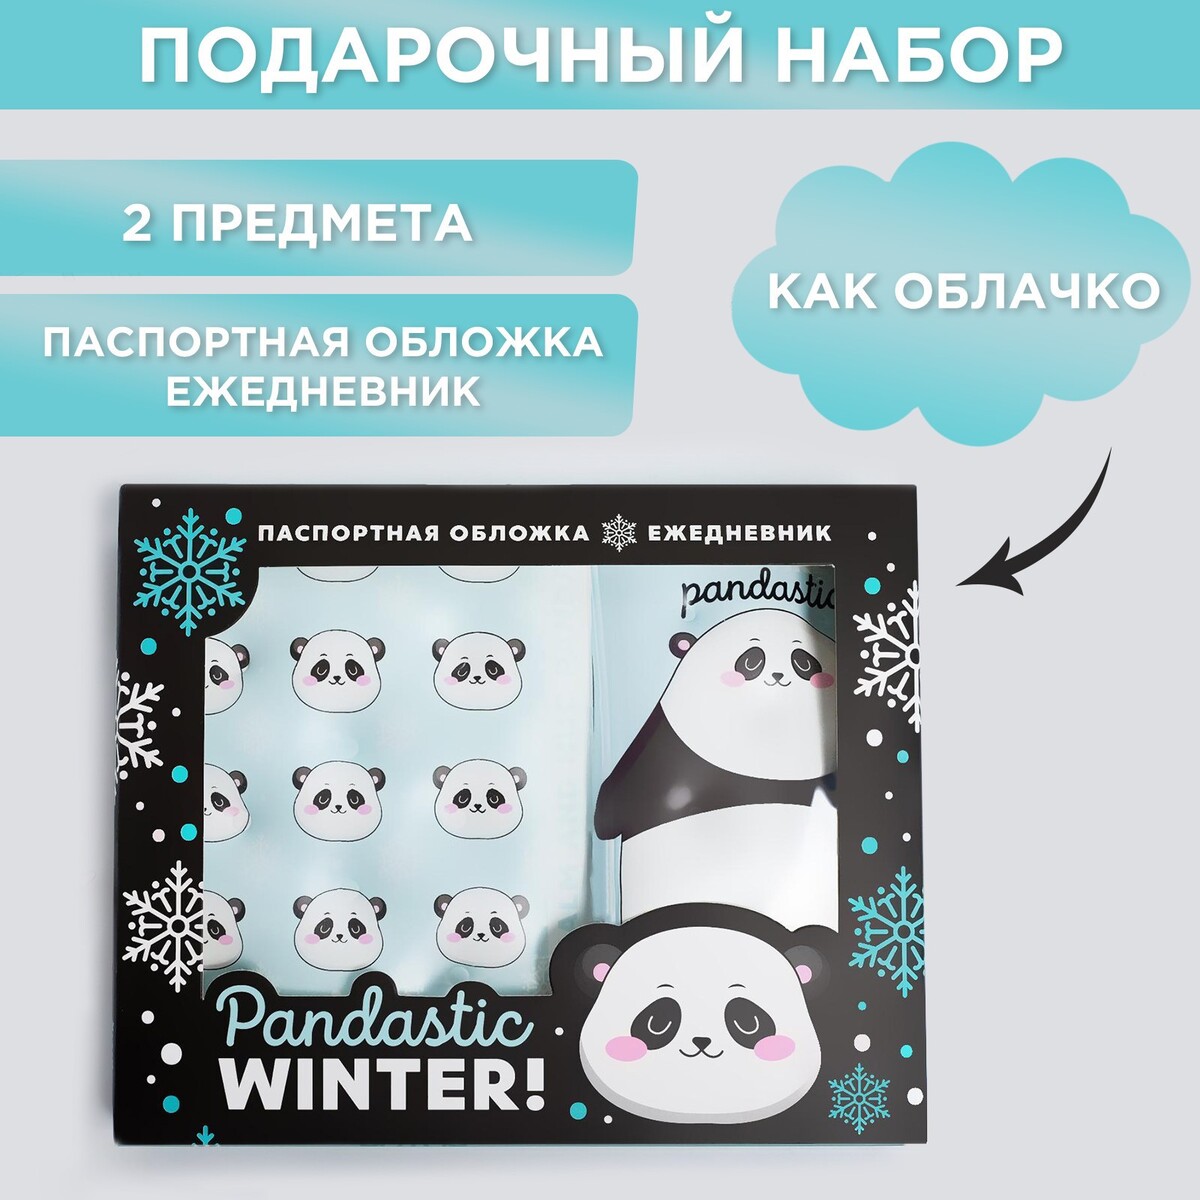  pandastic winter!:  -  -